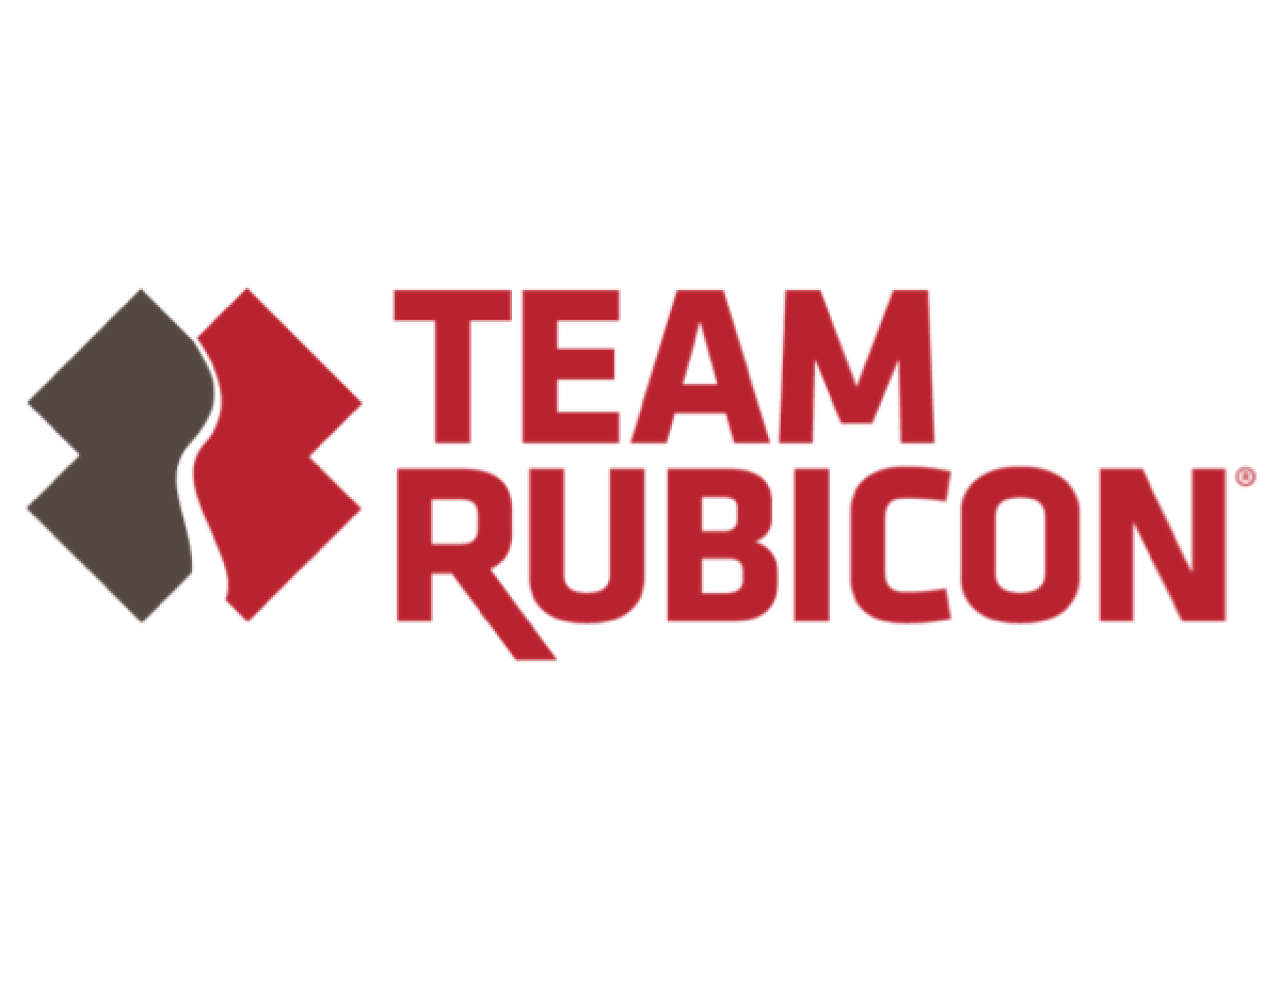 Team Rubicon logo.